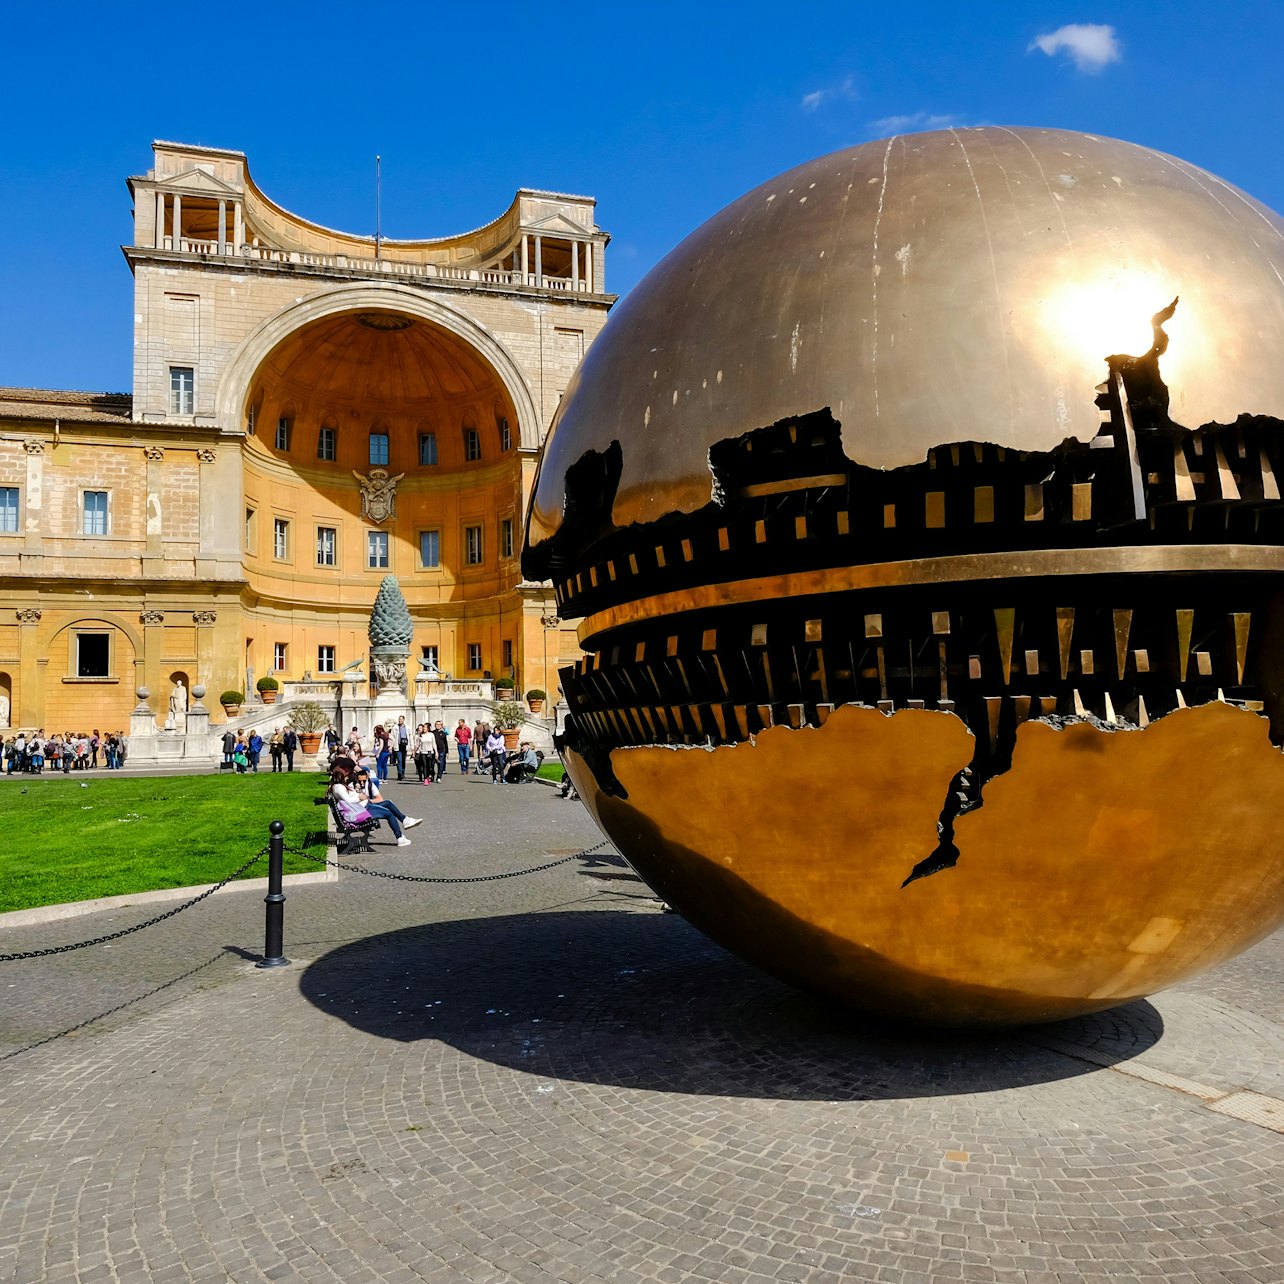 Museos Vaticanos y Capilla Sixtina: Entrada reservada - Alojamientos en Roma